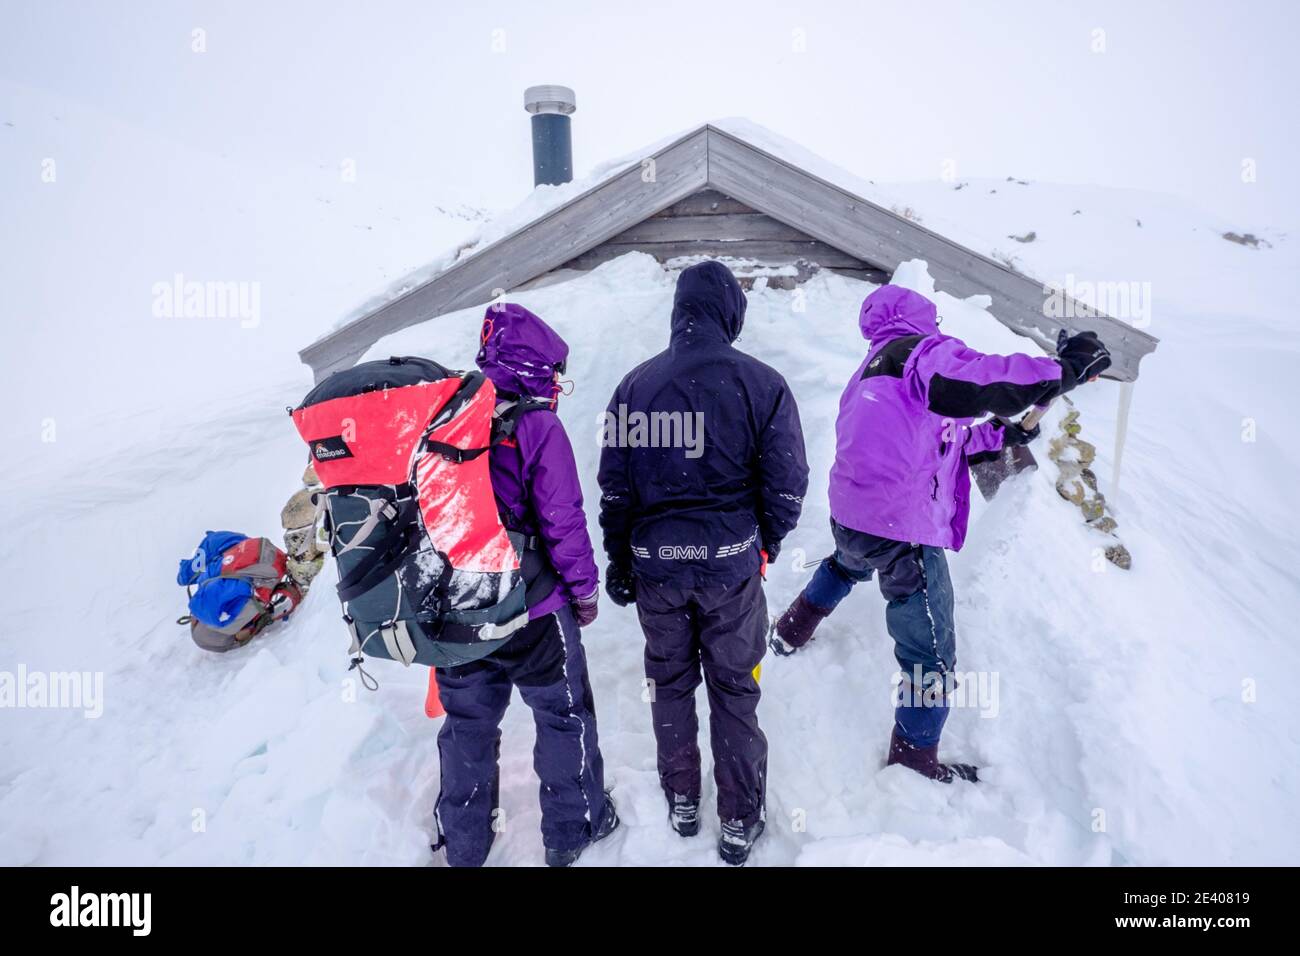 Skieurs lors d'une expédition de ski de randonnée qui creusent la neige Hutte liée dans les montagnes de Norvège Banque D'Images